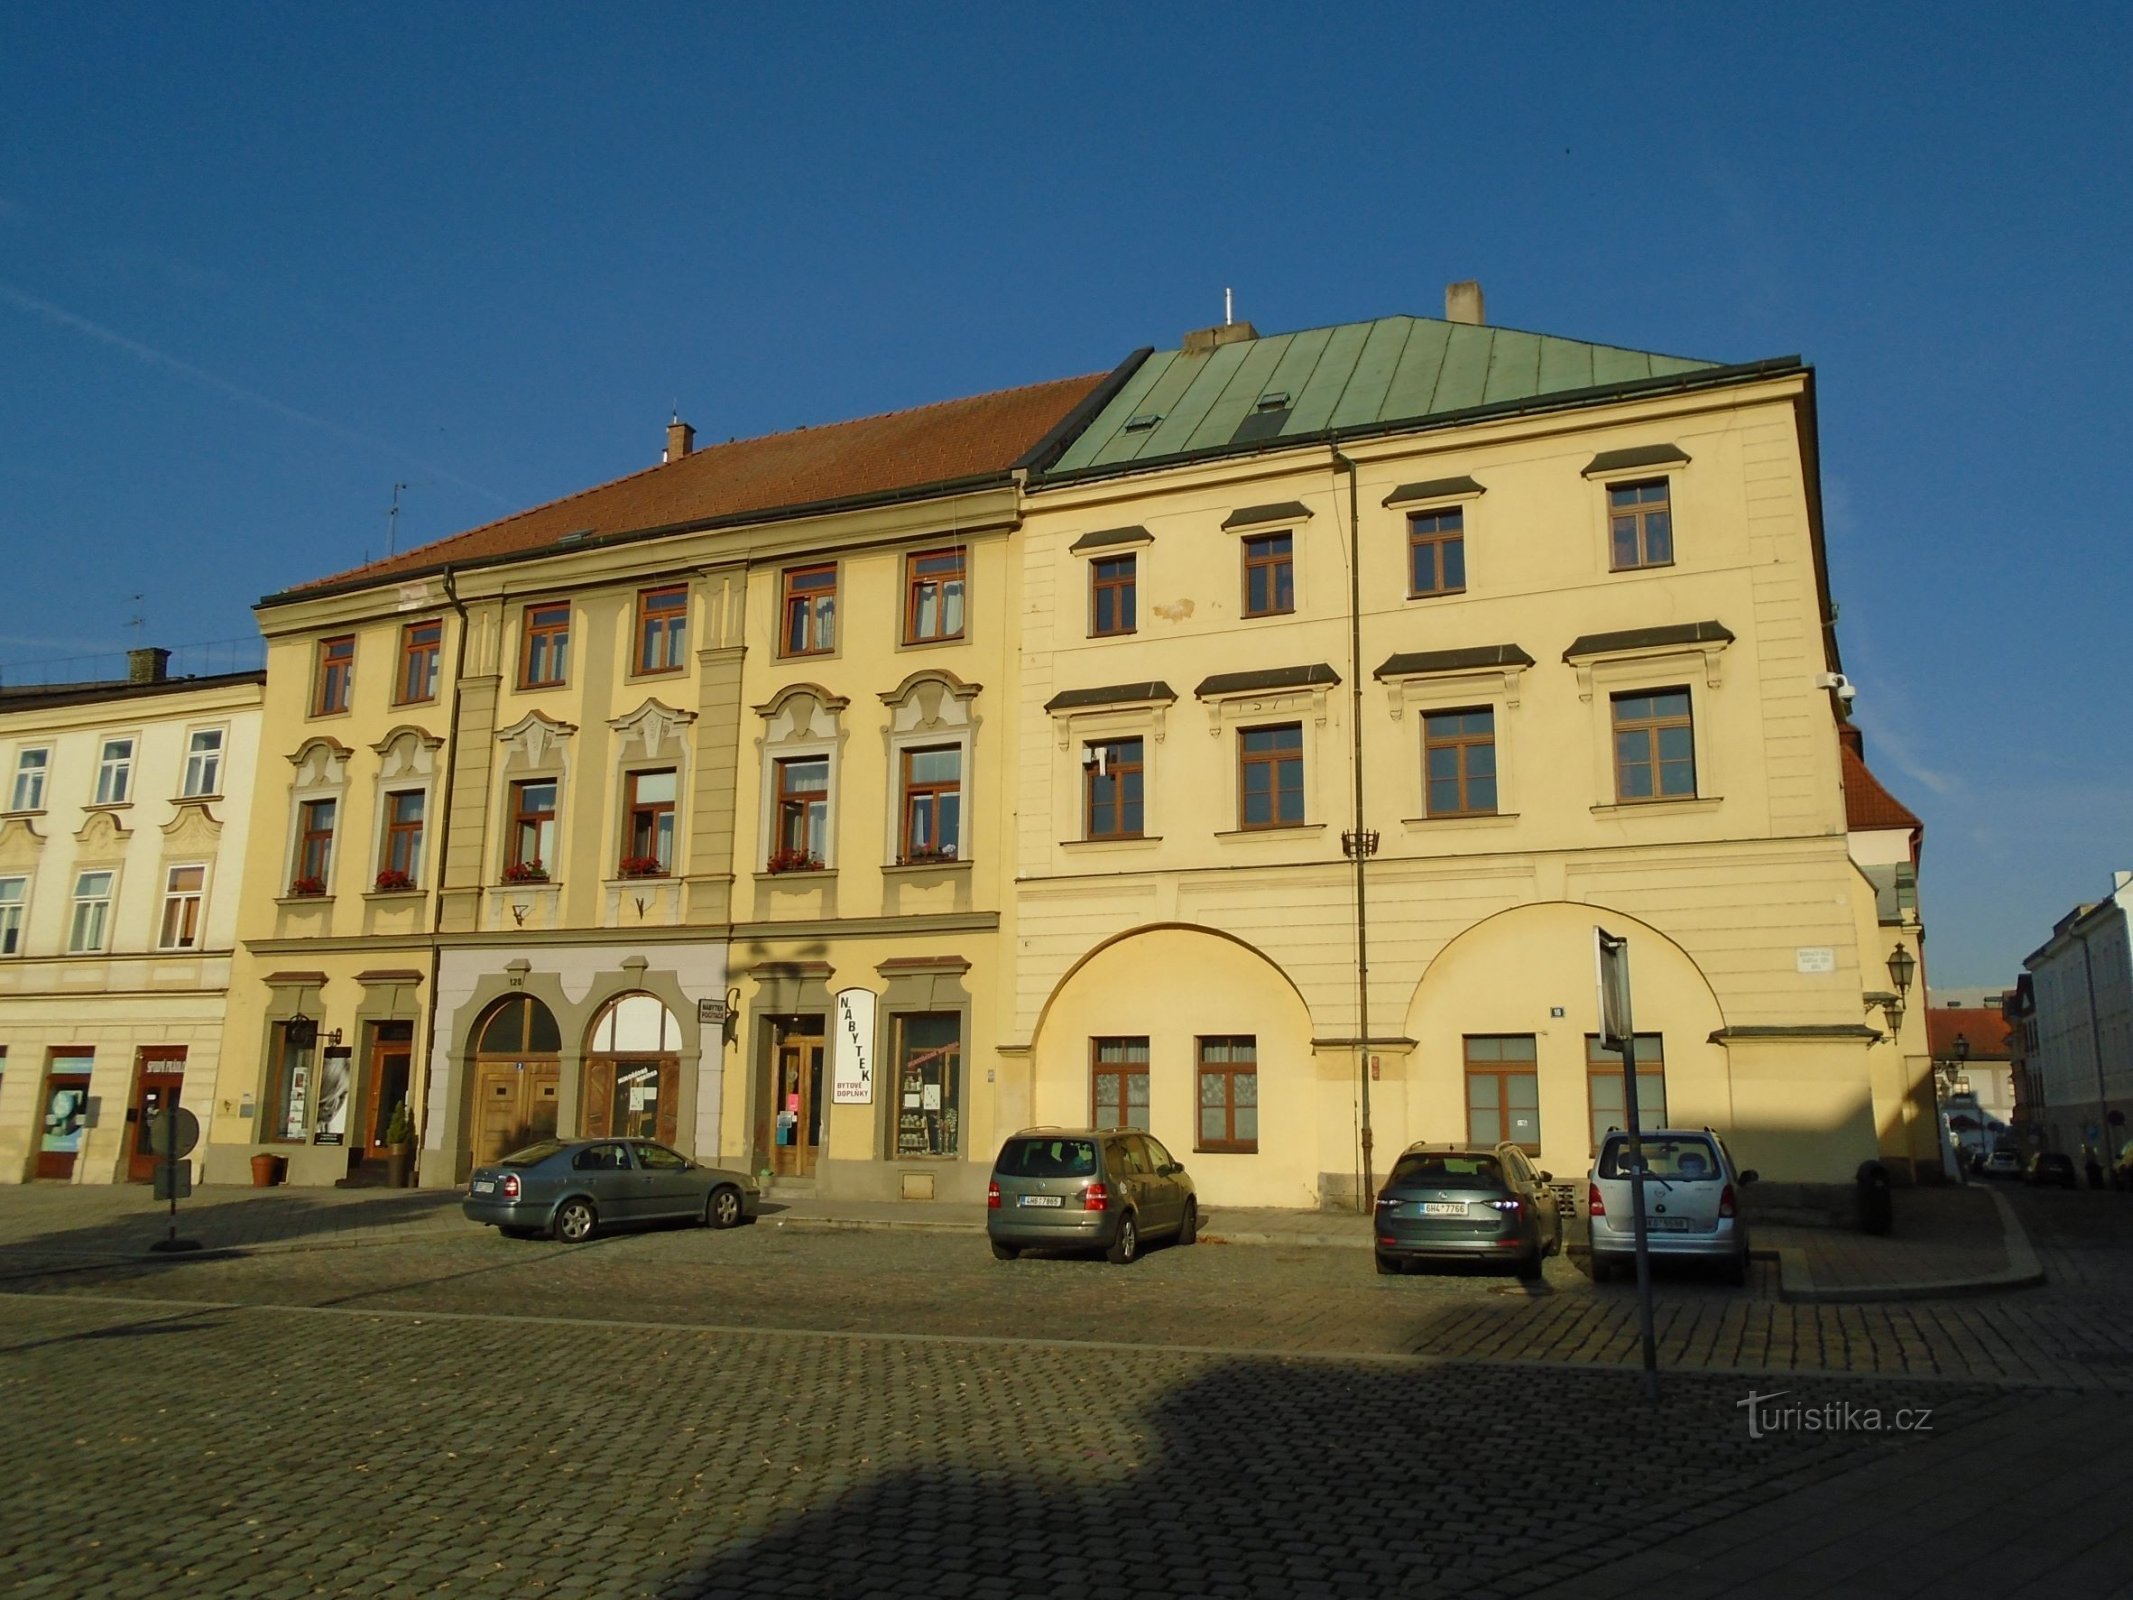 Malé náměstí No. 128 y Dlouhá No. 127 (Hradec Králové, 5.7.2018 de julio de XNUMX)